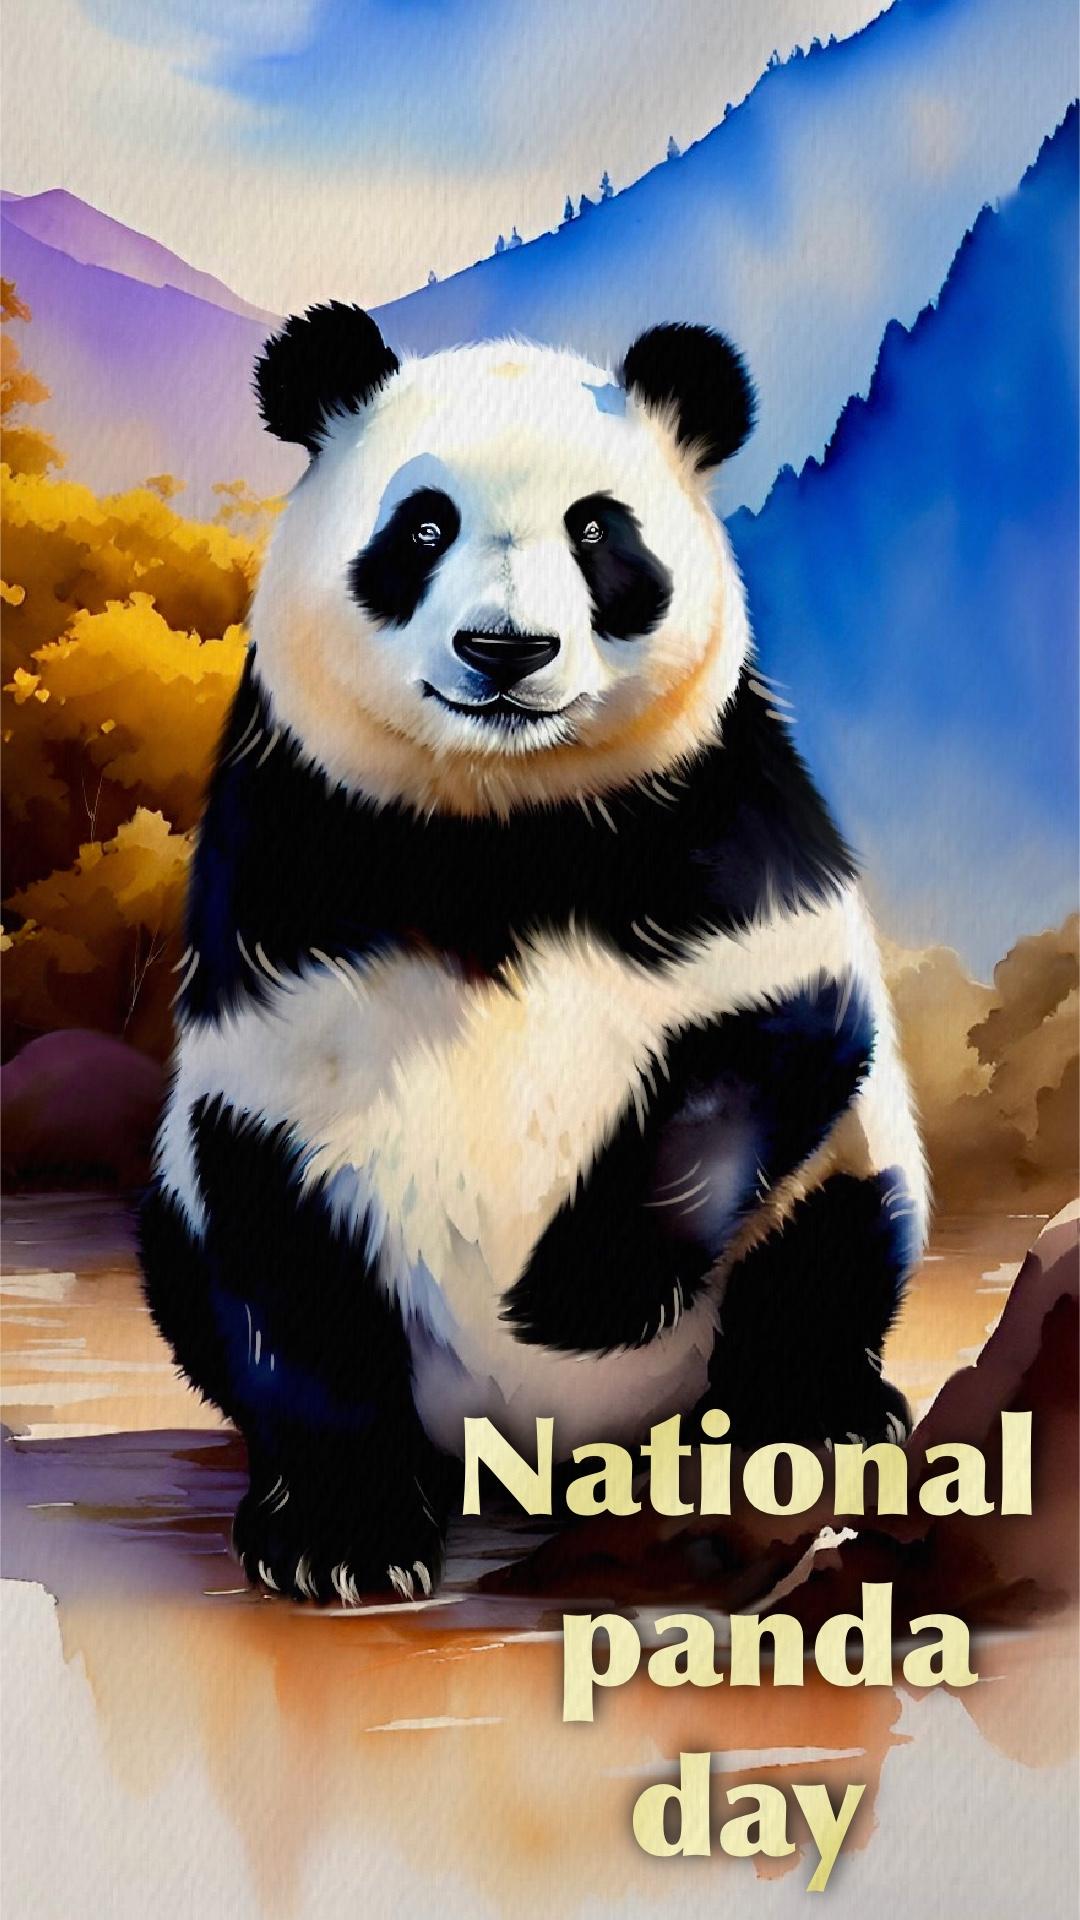 National panda day NFT cruzo